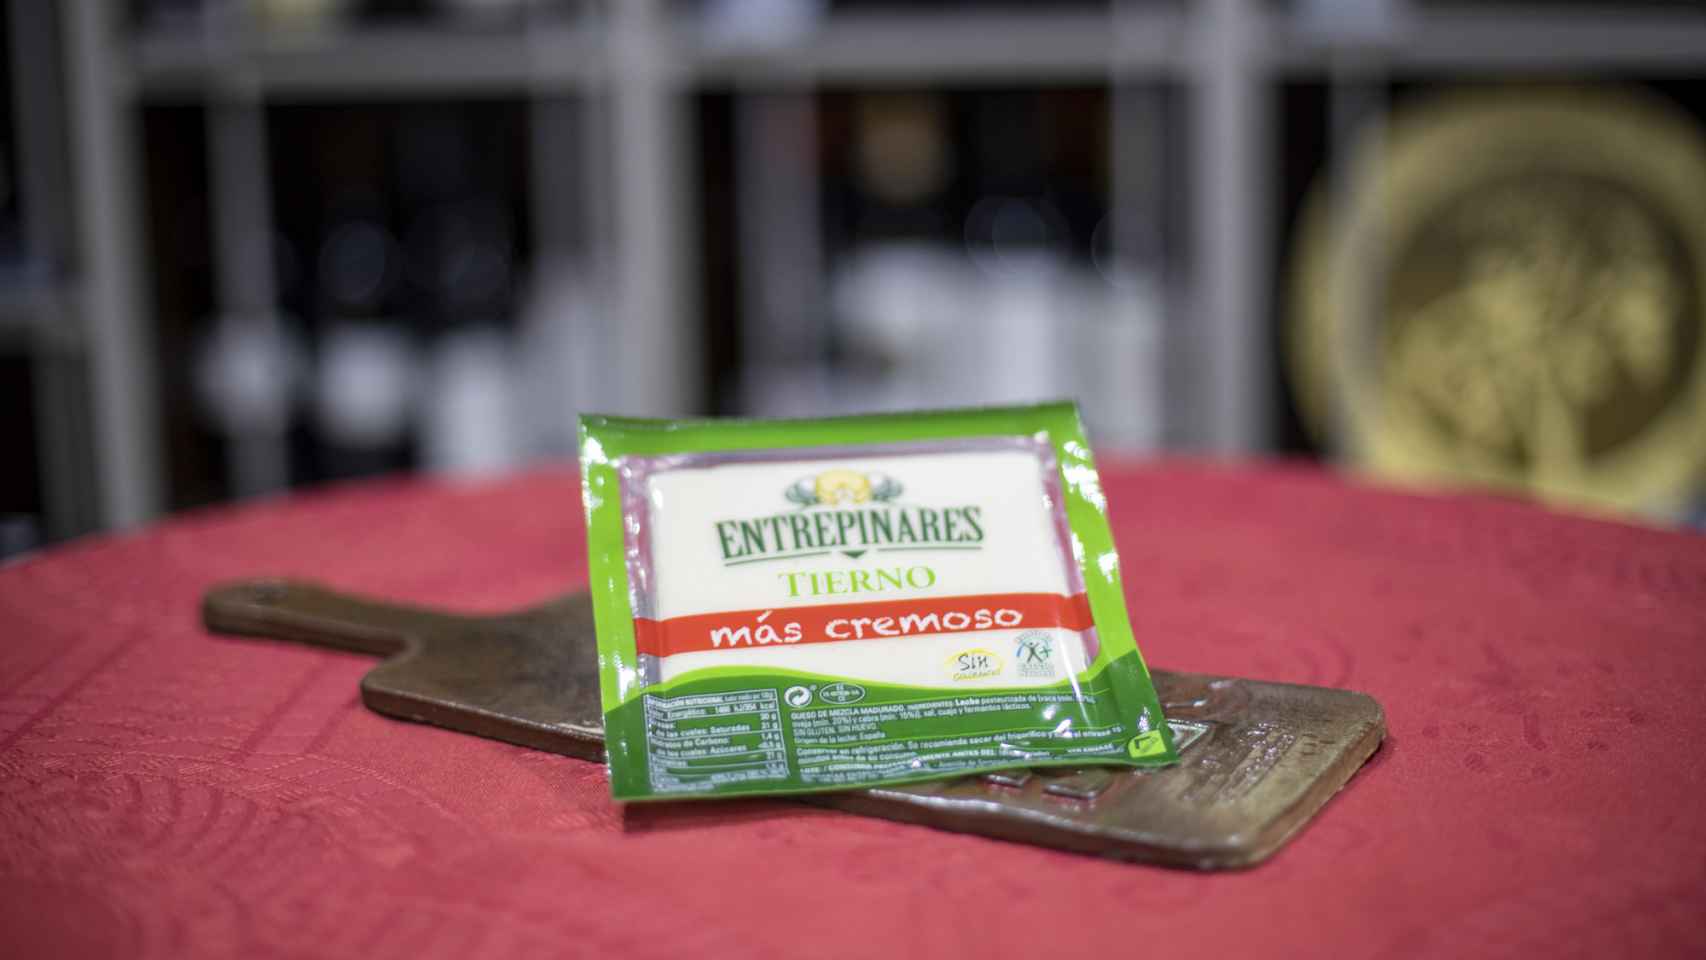 La cuña de queso tierno de Entrepinares, fabricante de marcas blancas de Mercadona.